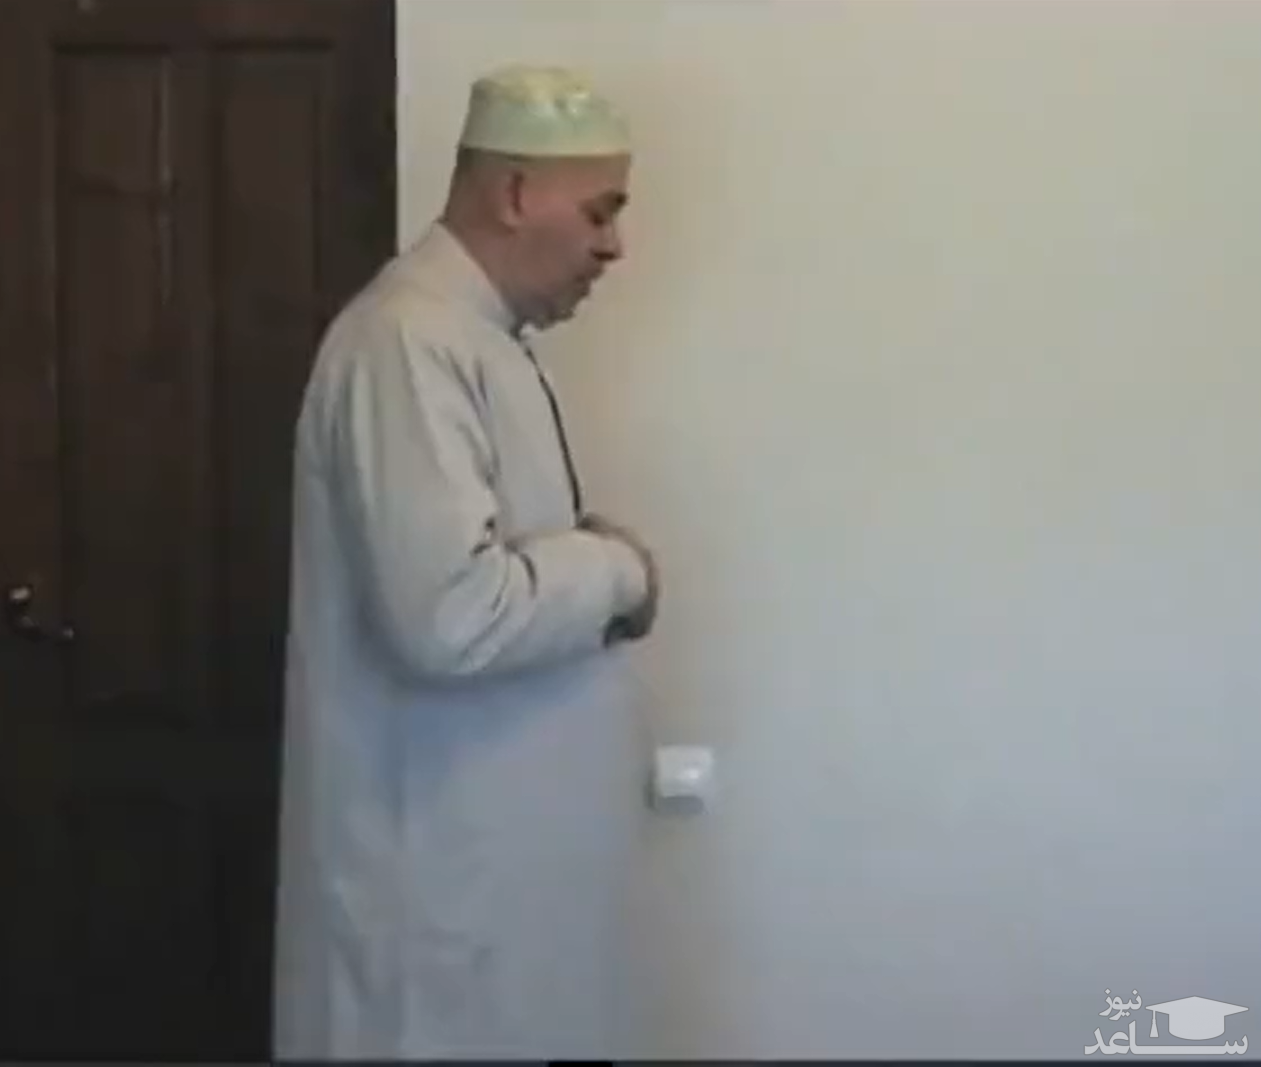 (فیلم) آموزش نماز خواندن به زبان آذری توسط پیامبران دروغین